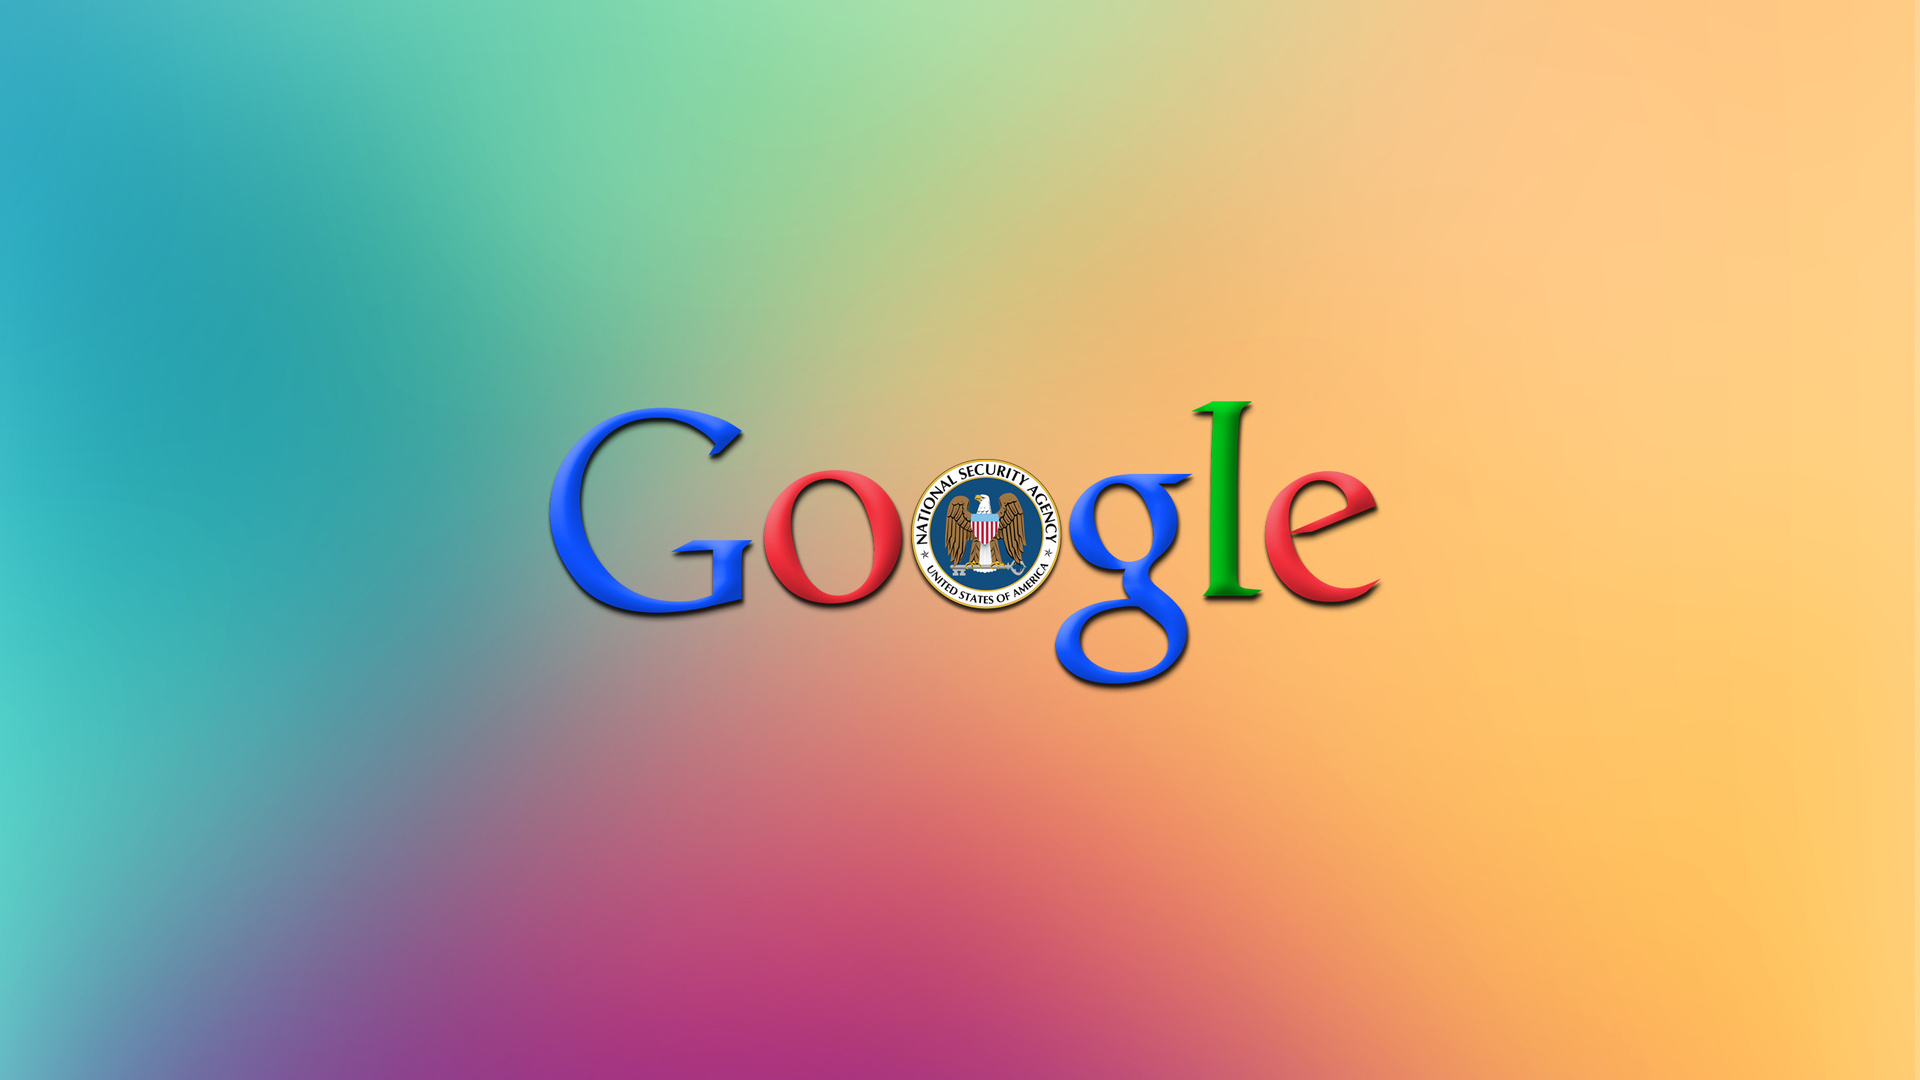 Google Logo Wallpapers - WallpaperSafari